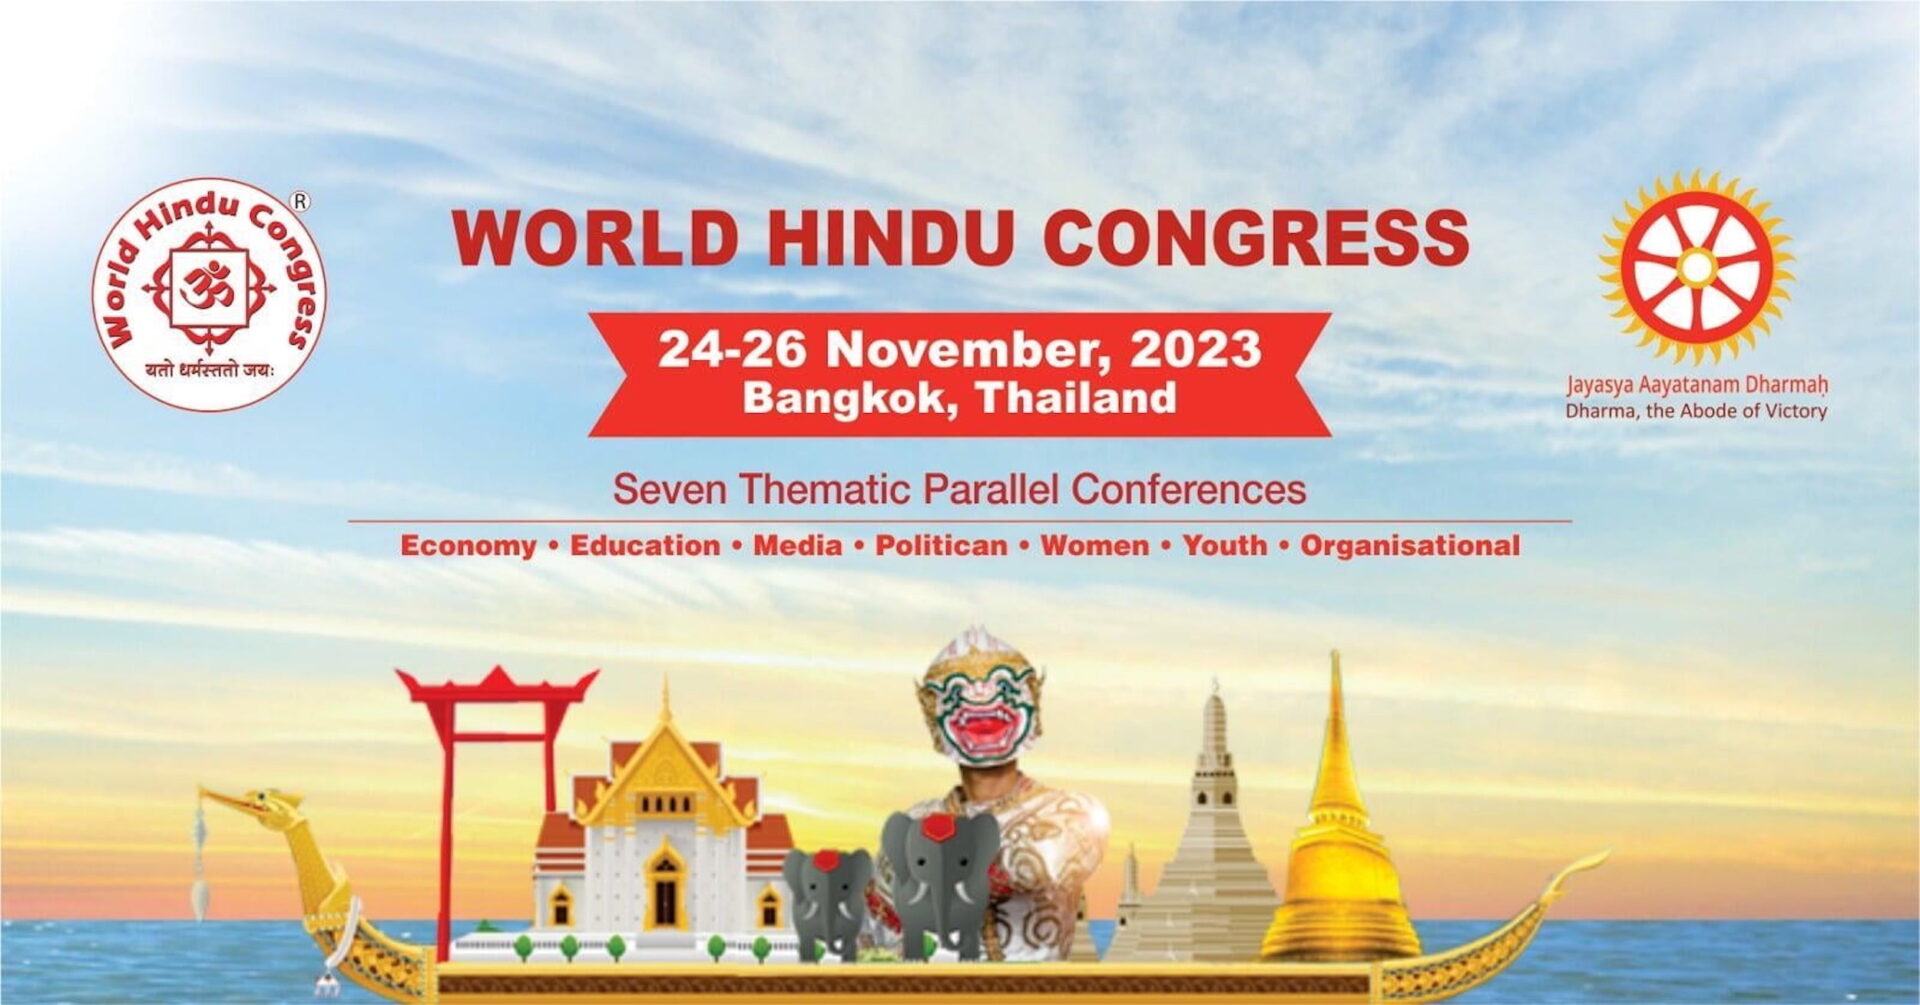 ประเทศไทยเปิดเวทีระดับโลก เป็นเจ้าภาพ ‘World Hindu Congress 2023’ ครั้ง